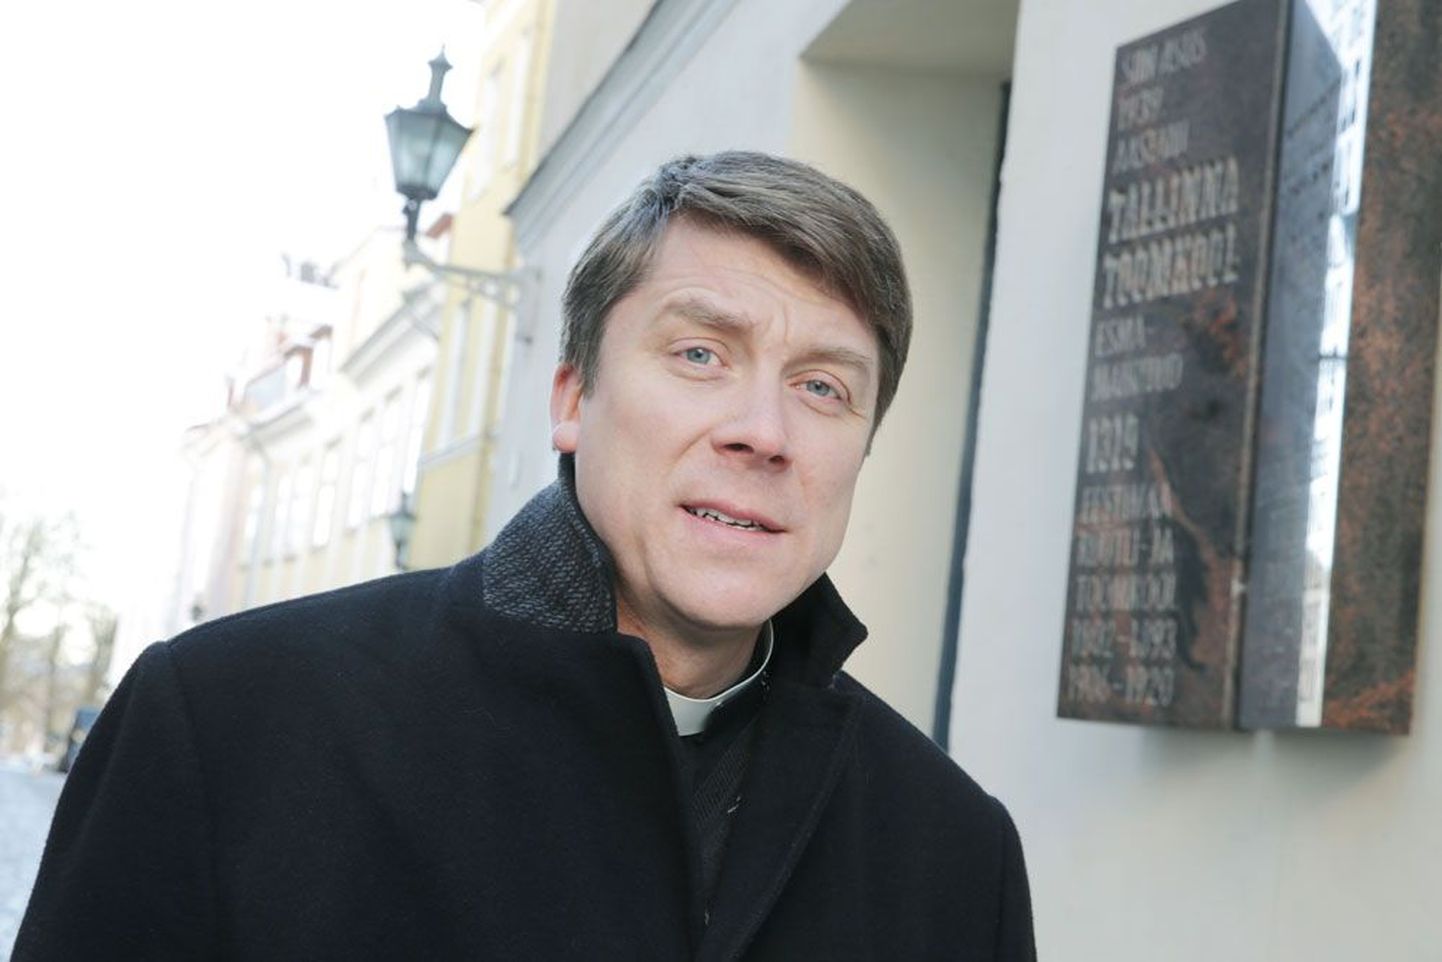 Tallinna Toomkooli juhatuse liikme Urmas Viilma sõnul saab konkreetse kiriku õpetusele vastavat haridust anda ainult erakoolis.